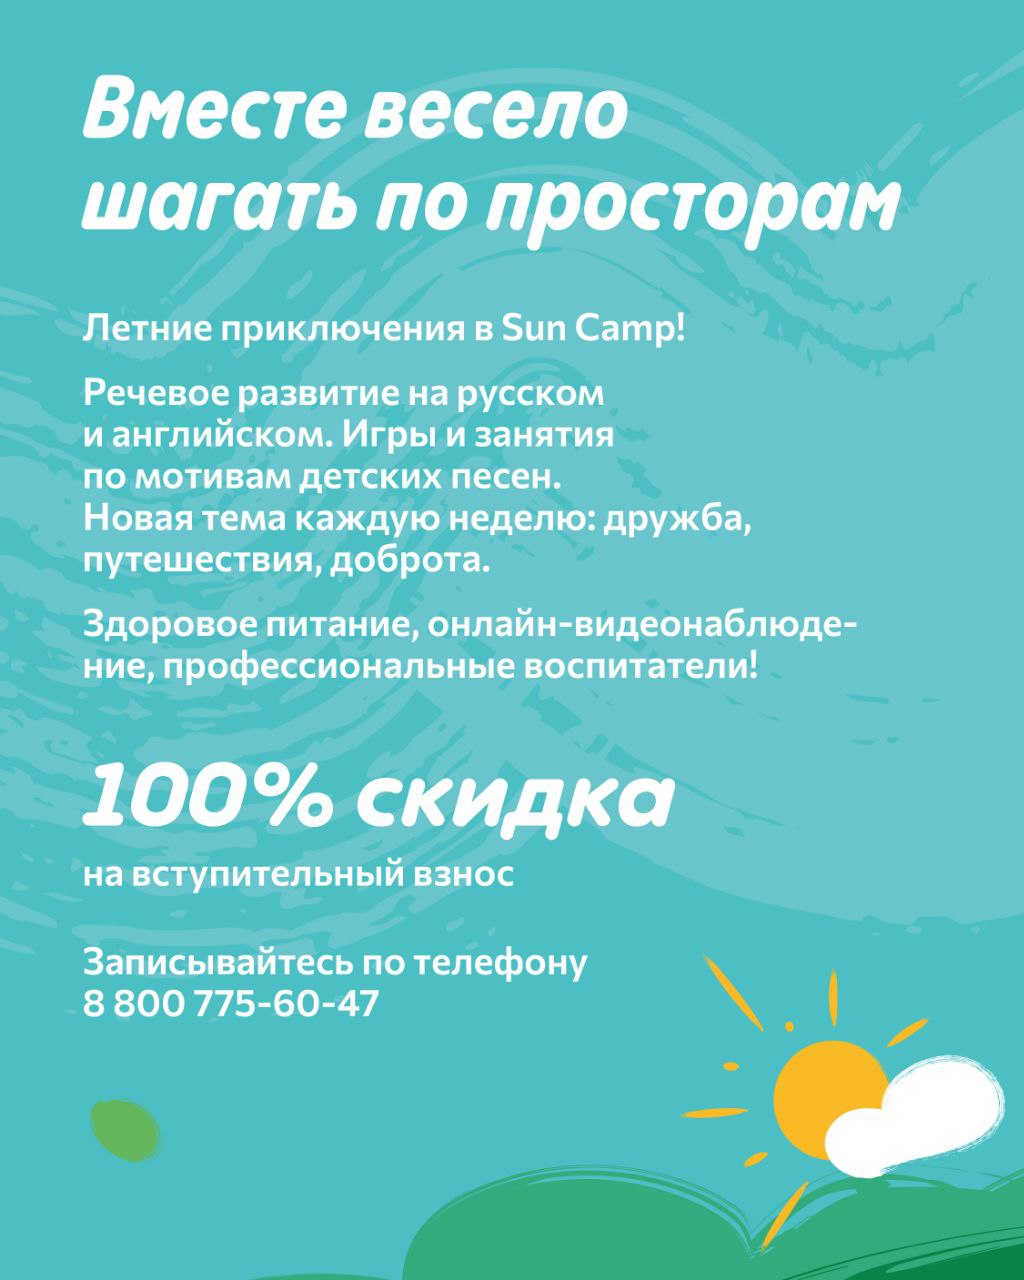 Sun camp